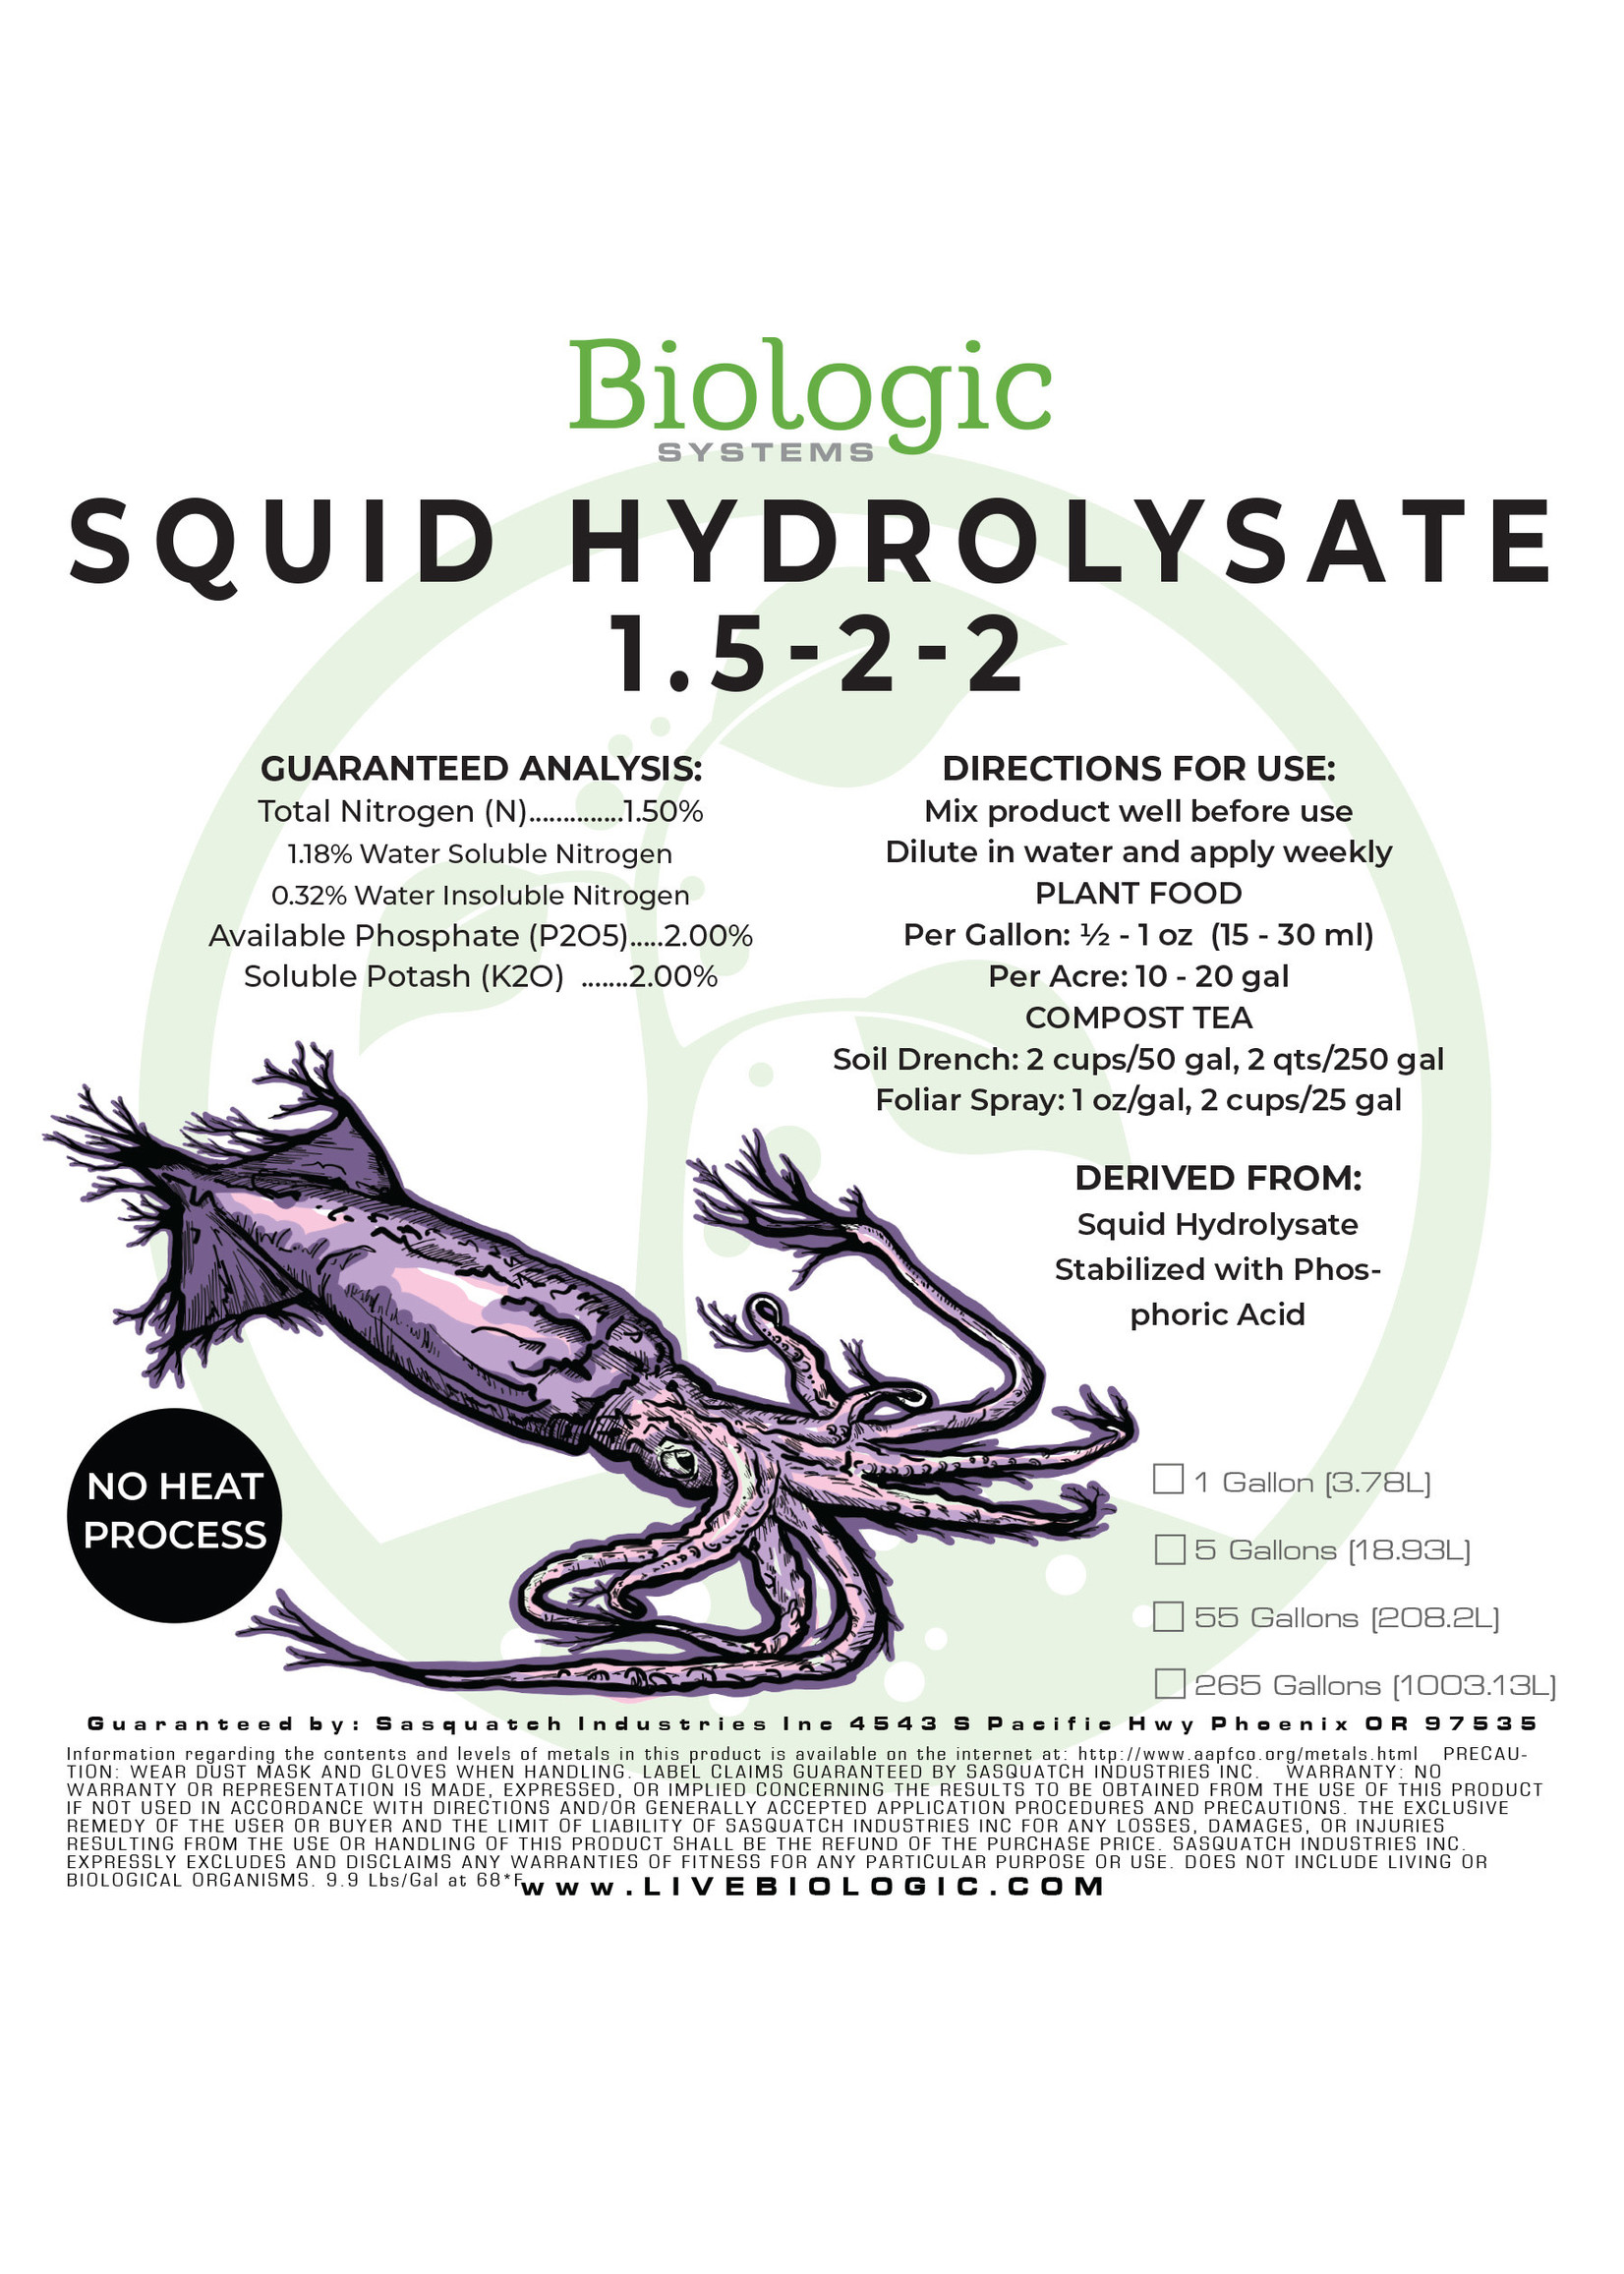 Biologic Systems Squid Hydrolysate